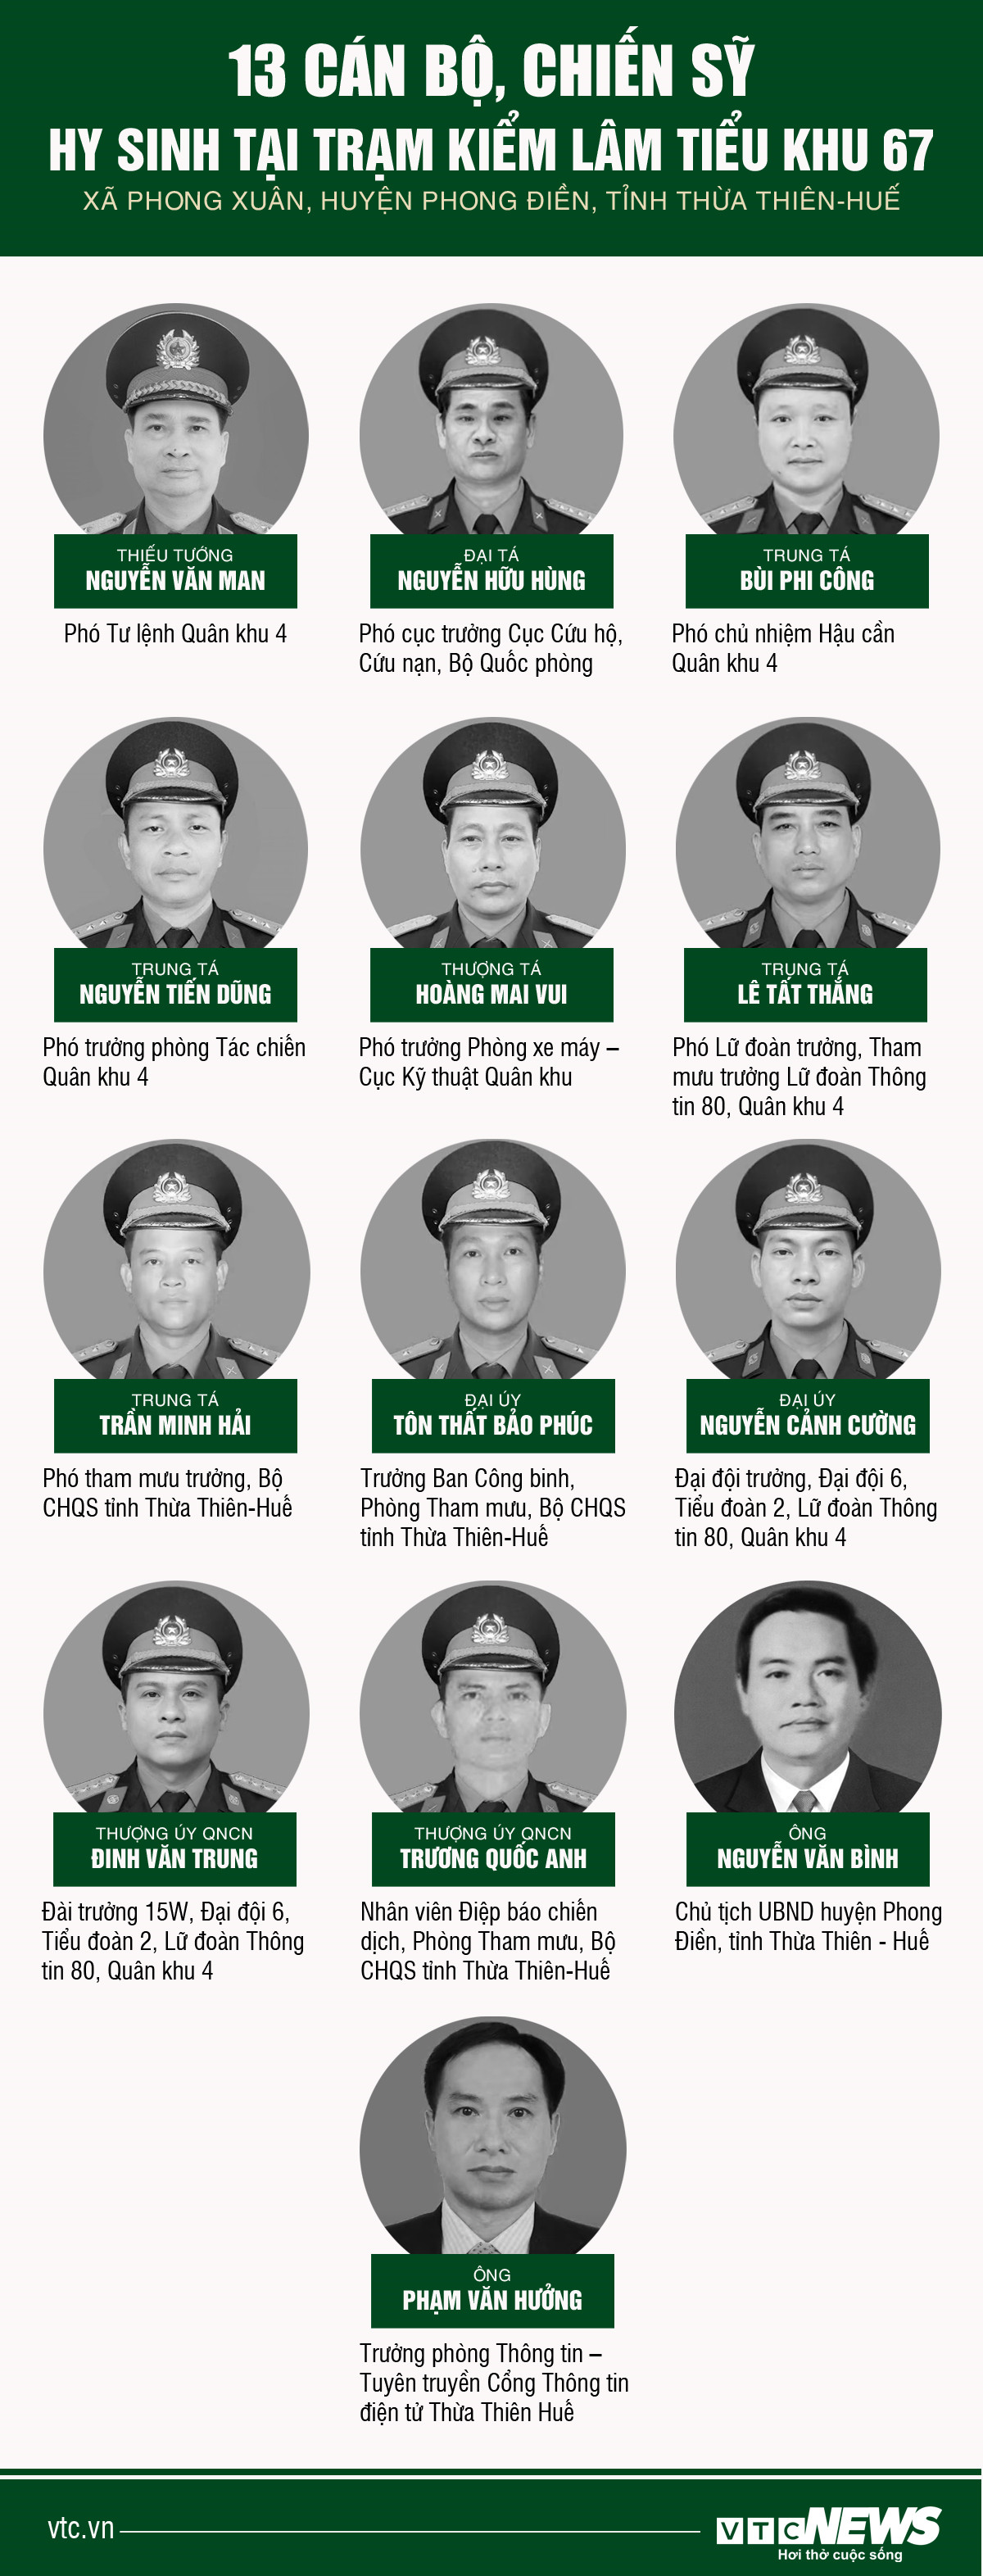 Infographic: Chân dung 13 liệt sỹ hy sinh khi làm nhiệm vụ cứu nạn ở Rào Trăng 3 - 1